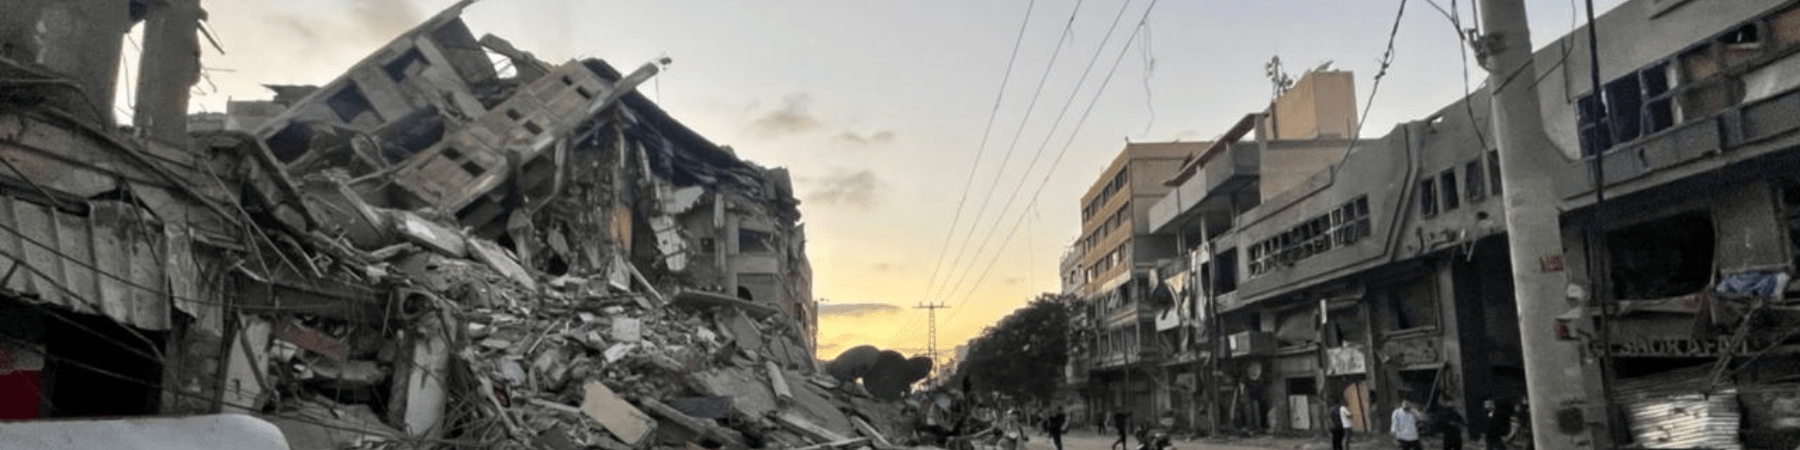 edificio distrutto a Gaza nel maggio 2021